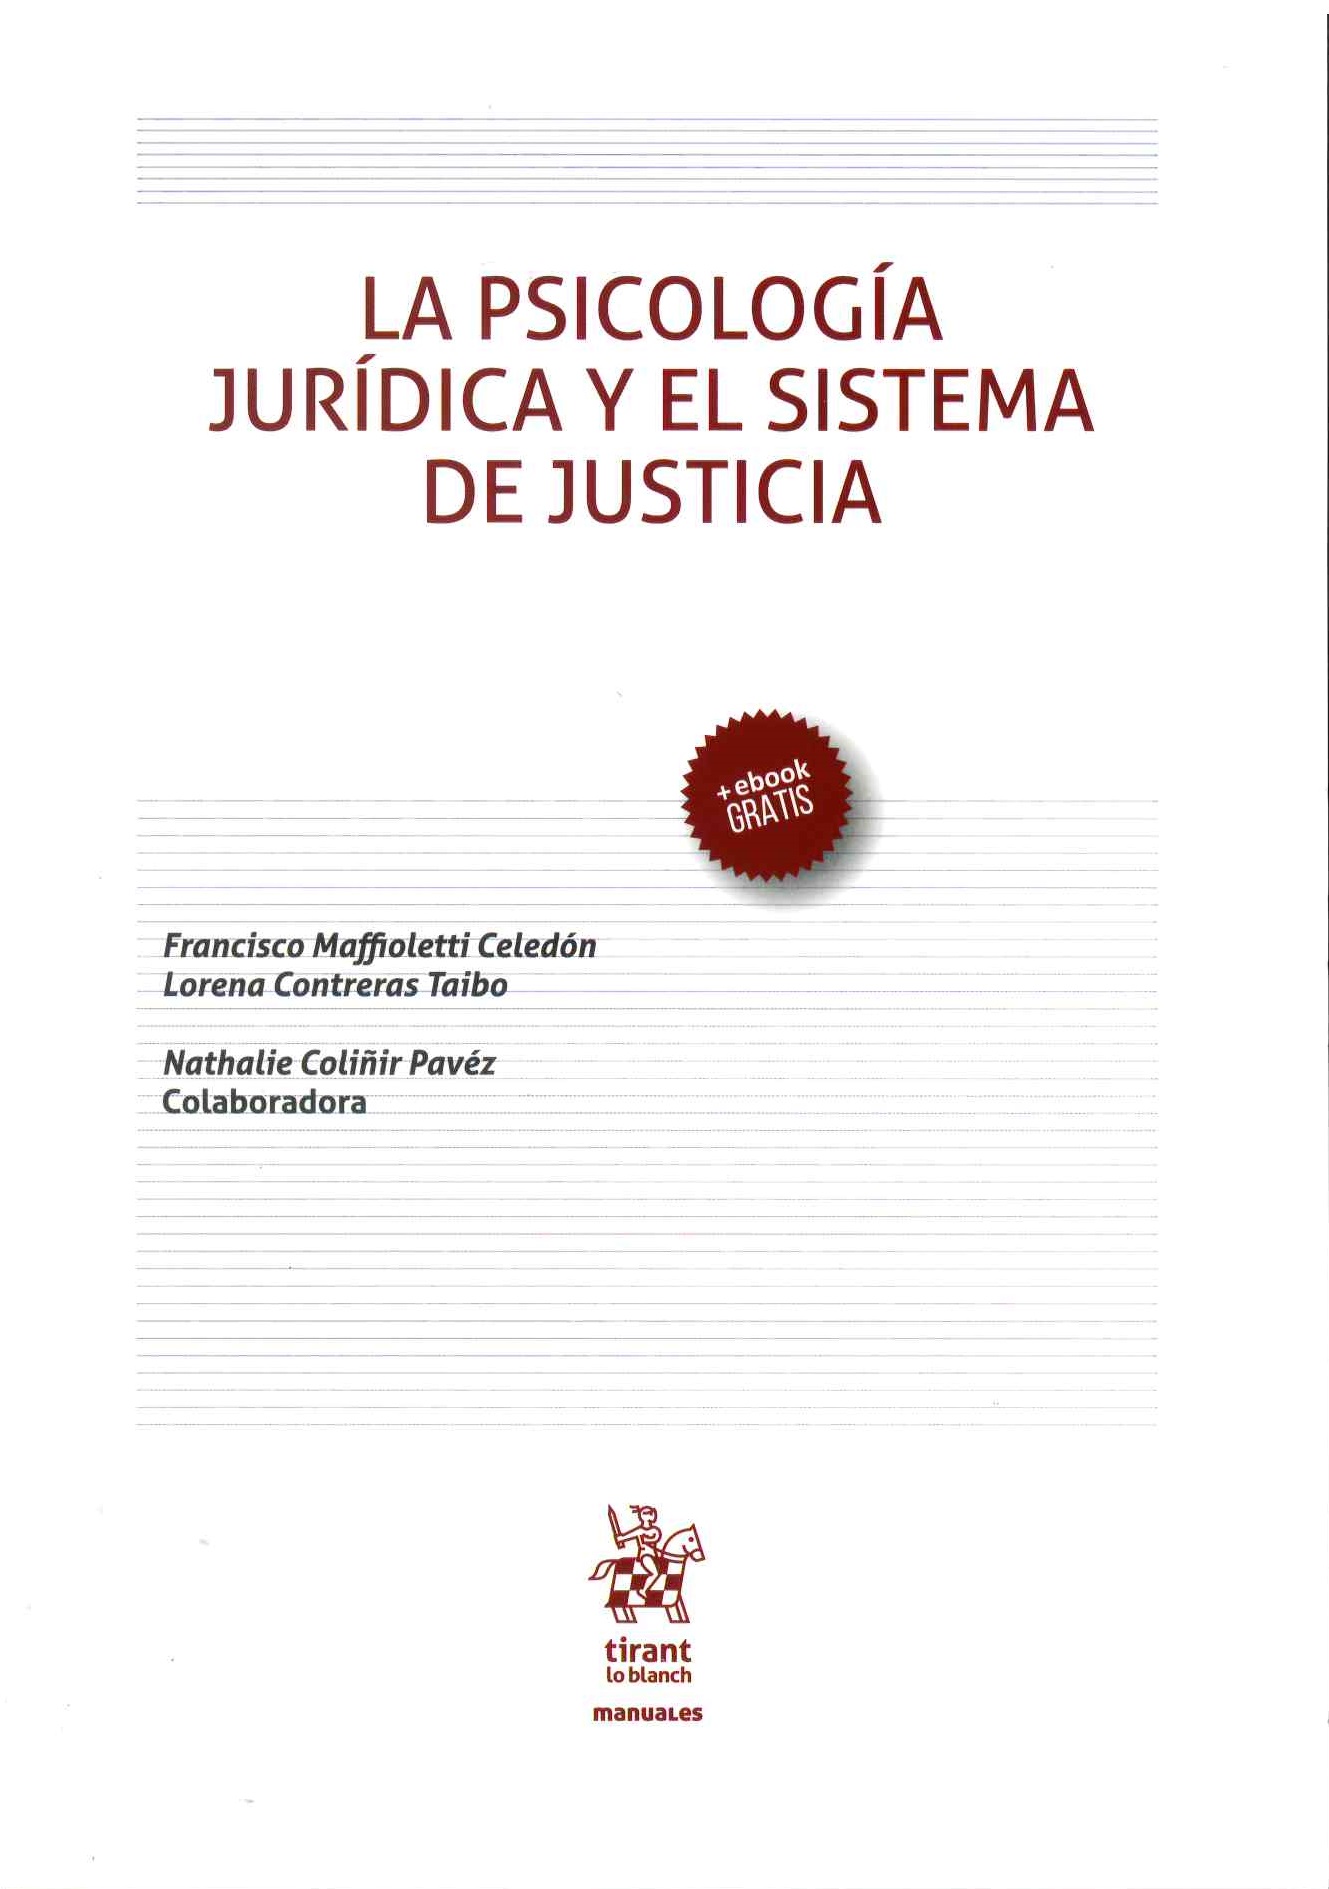 La psicología jurídica y el sistema de justicia